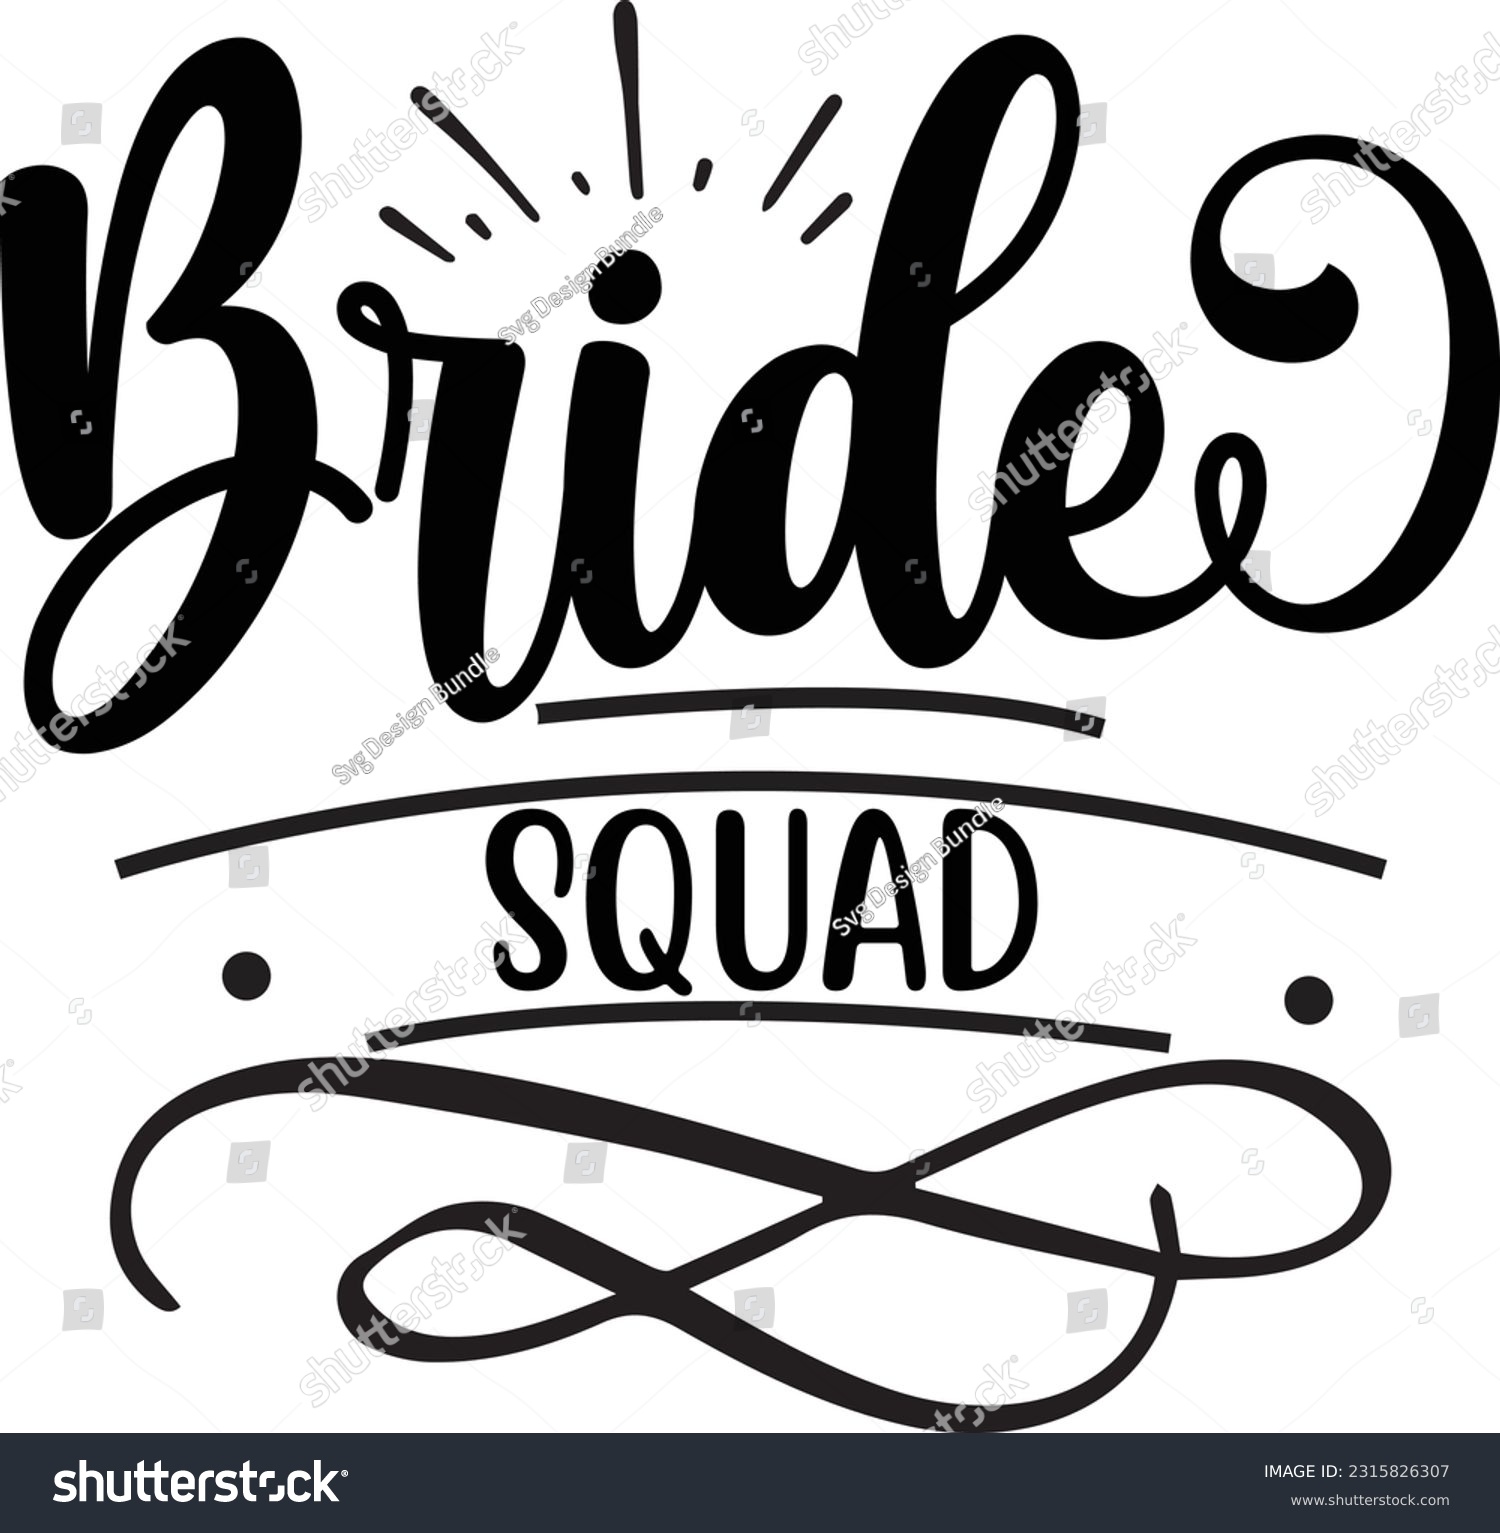 SVG of Bride squad svg, wedding SVG Design, wedding quotes design svg